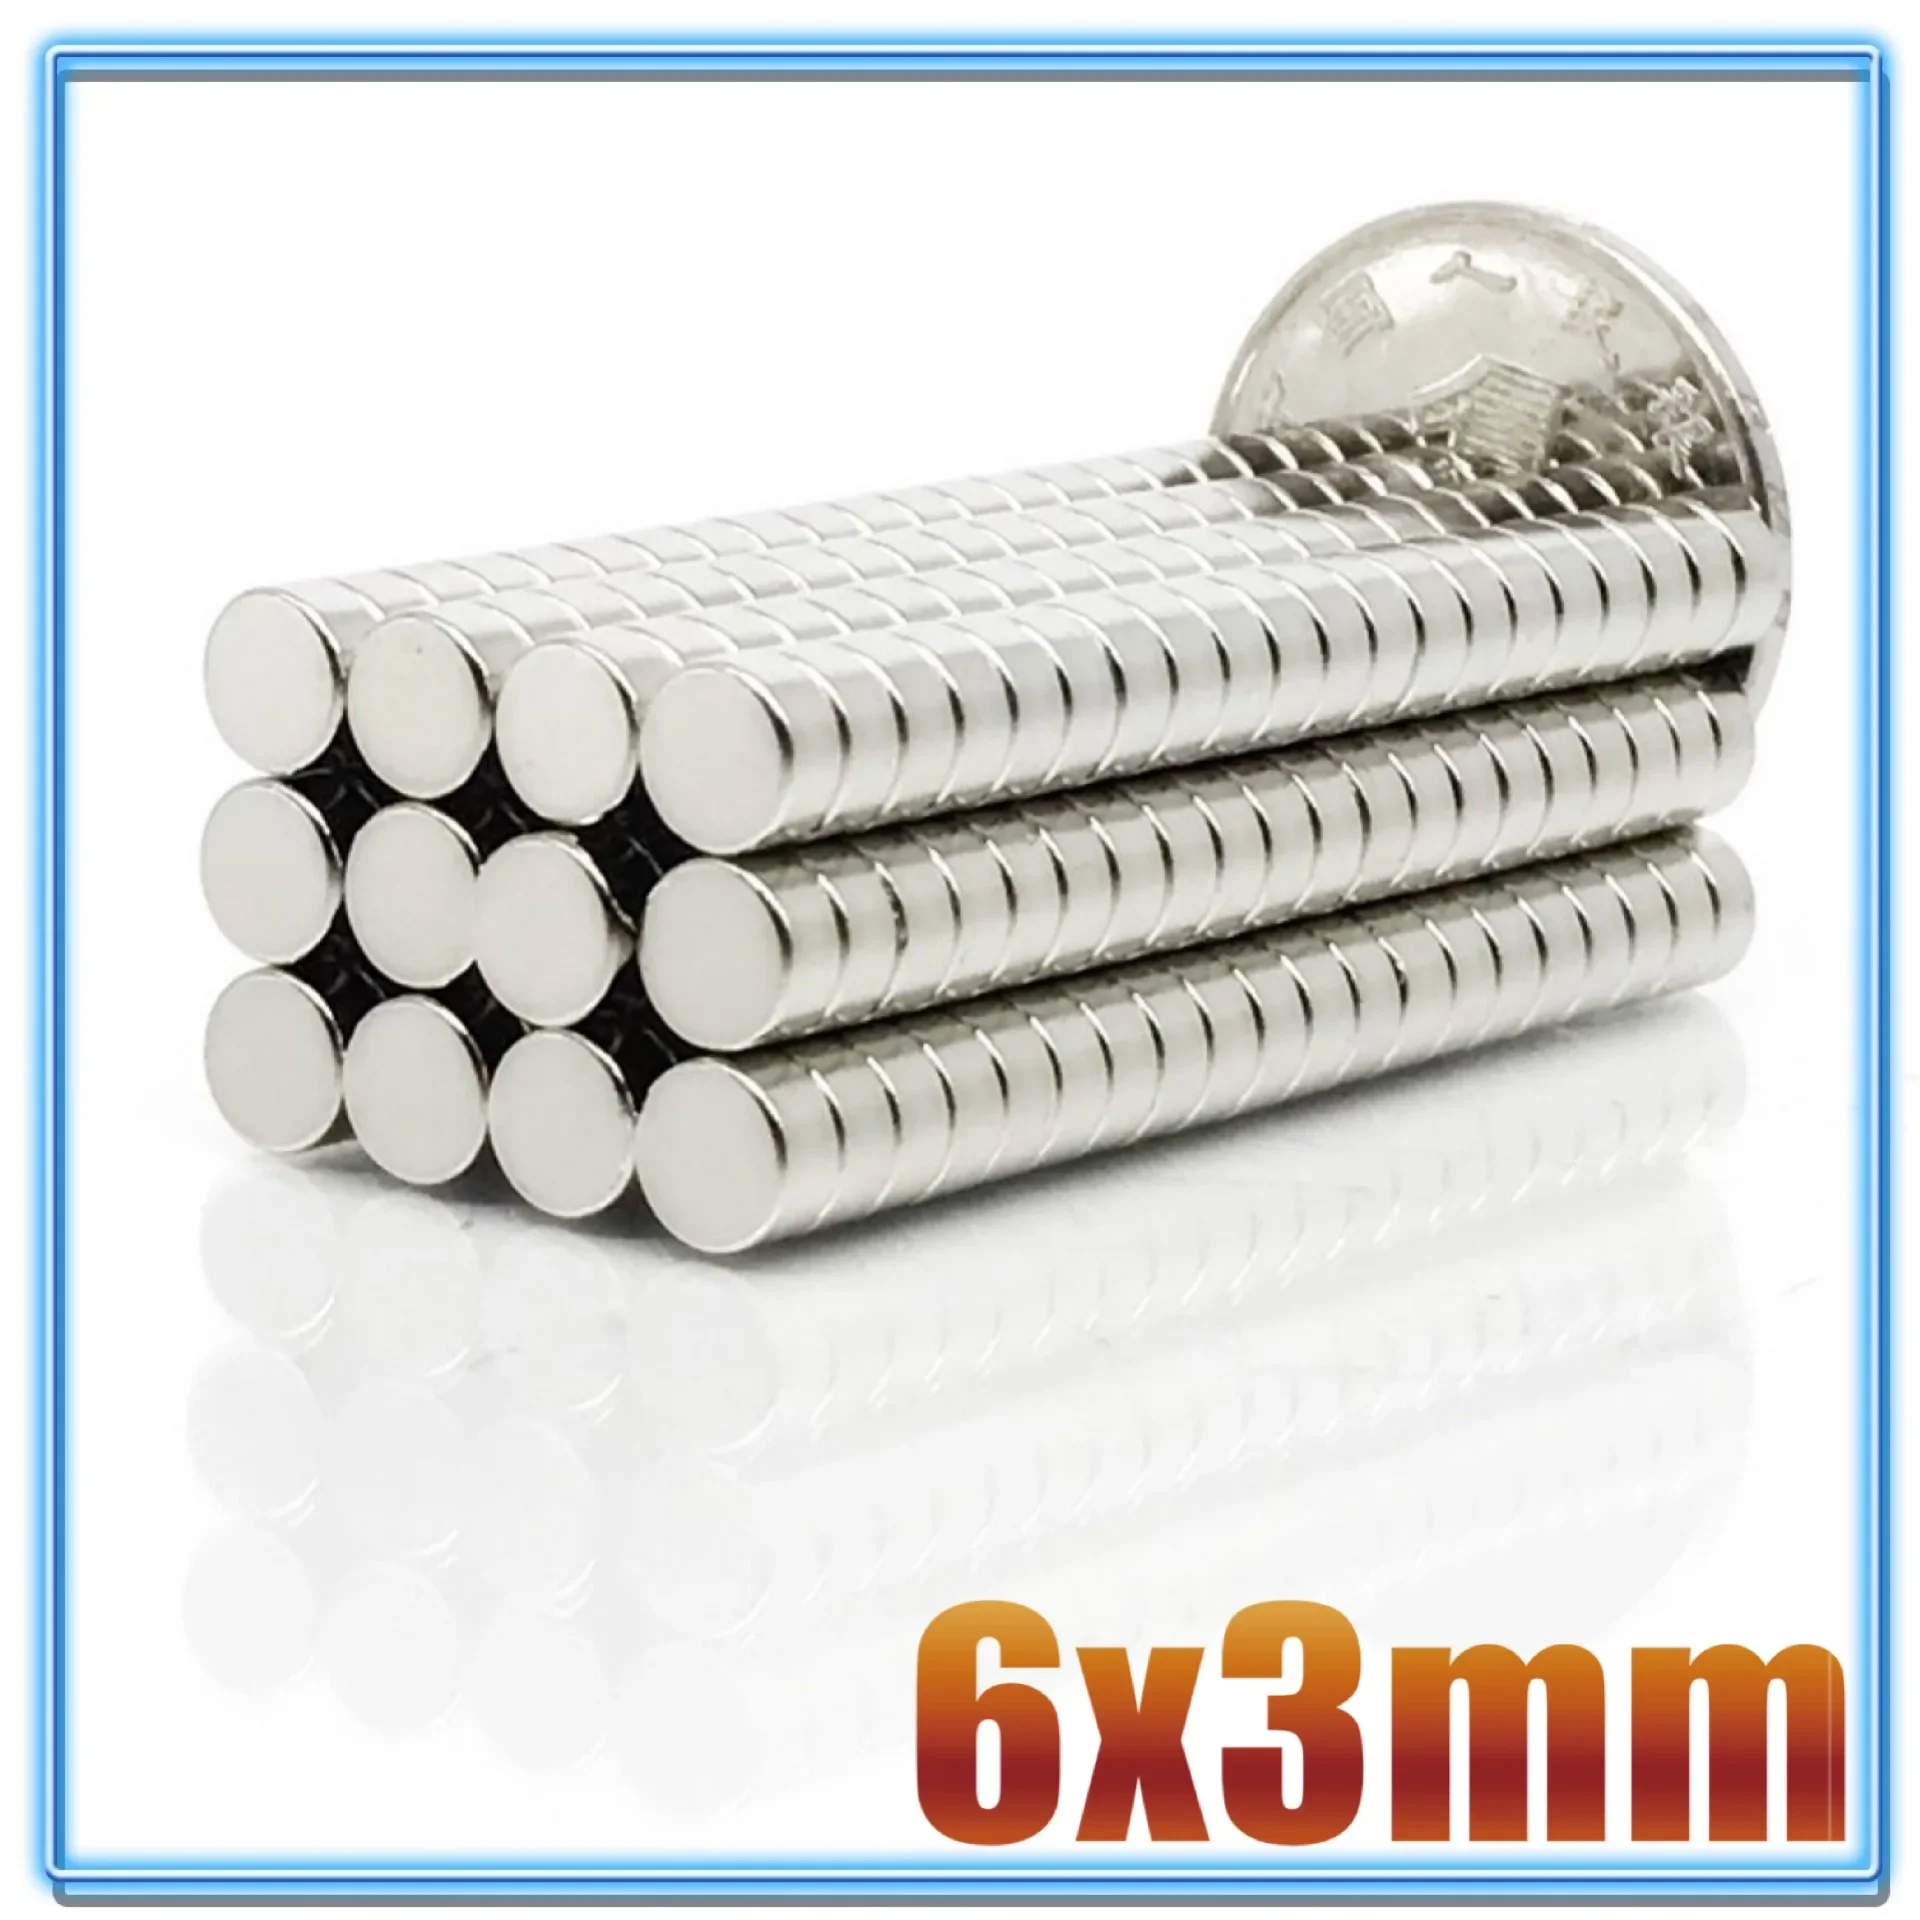 100pcs Mali kicsi N35 Futam Mágnes 6x1 6x2 6x3 6x4 6x10 6x20 mmes Neodímium Mágnes Állandó ndfeb szuper Erős Hatalmas magnets